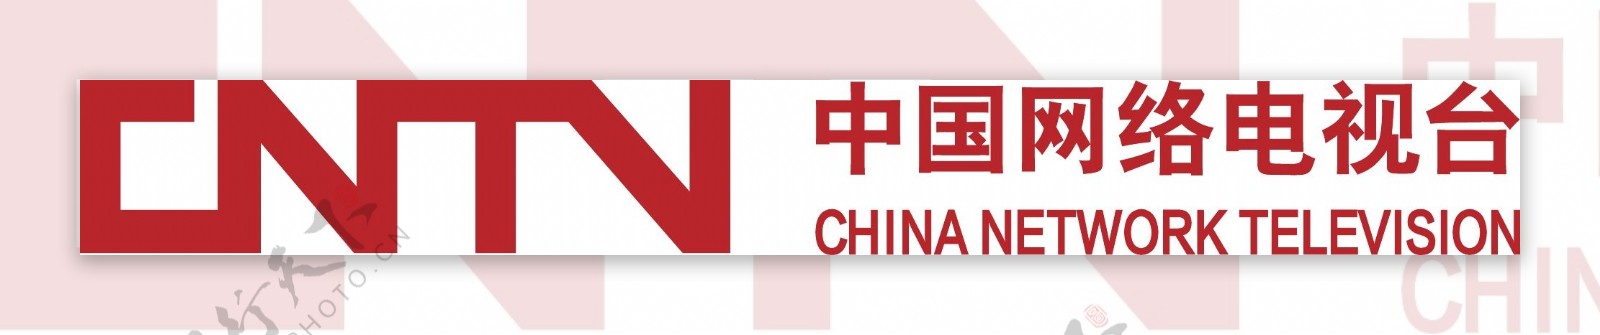 网络电视台logo图片